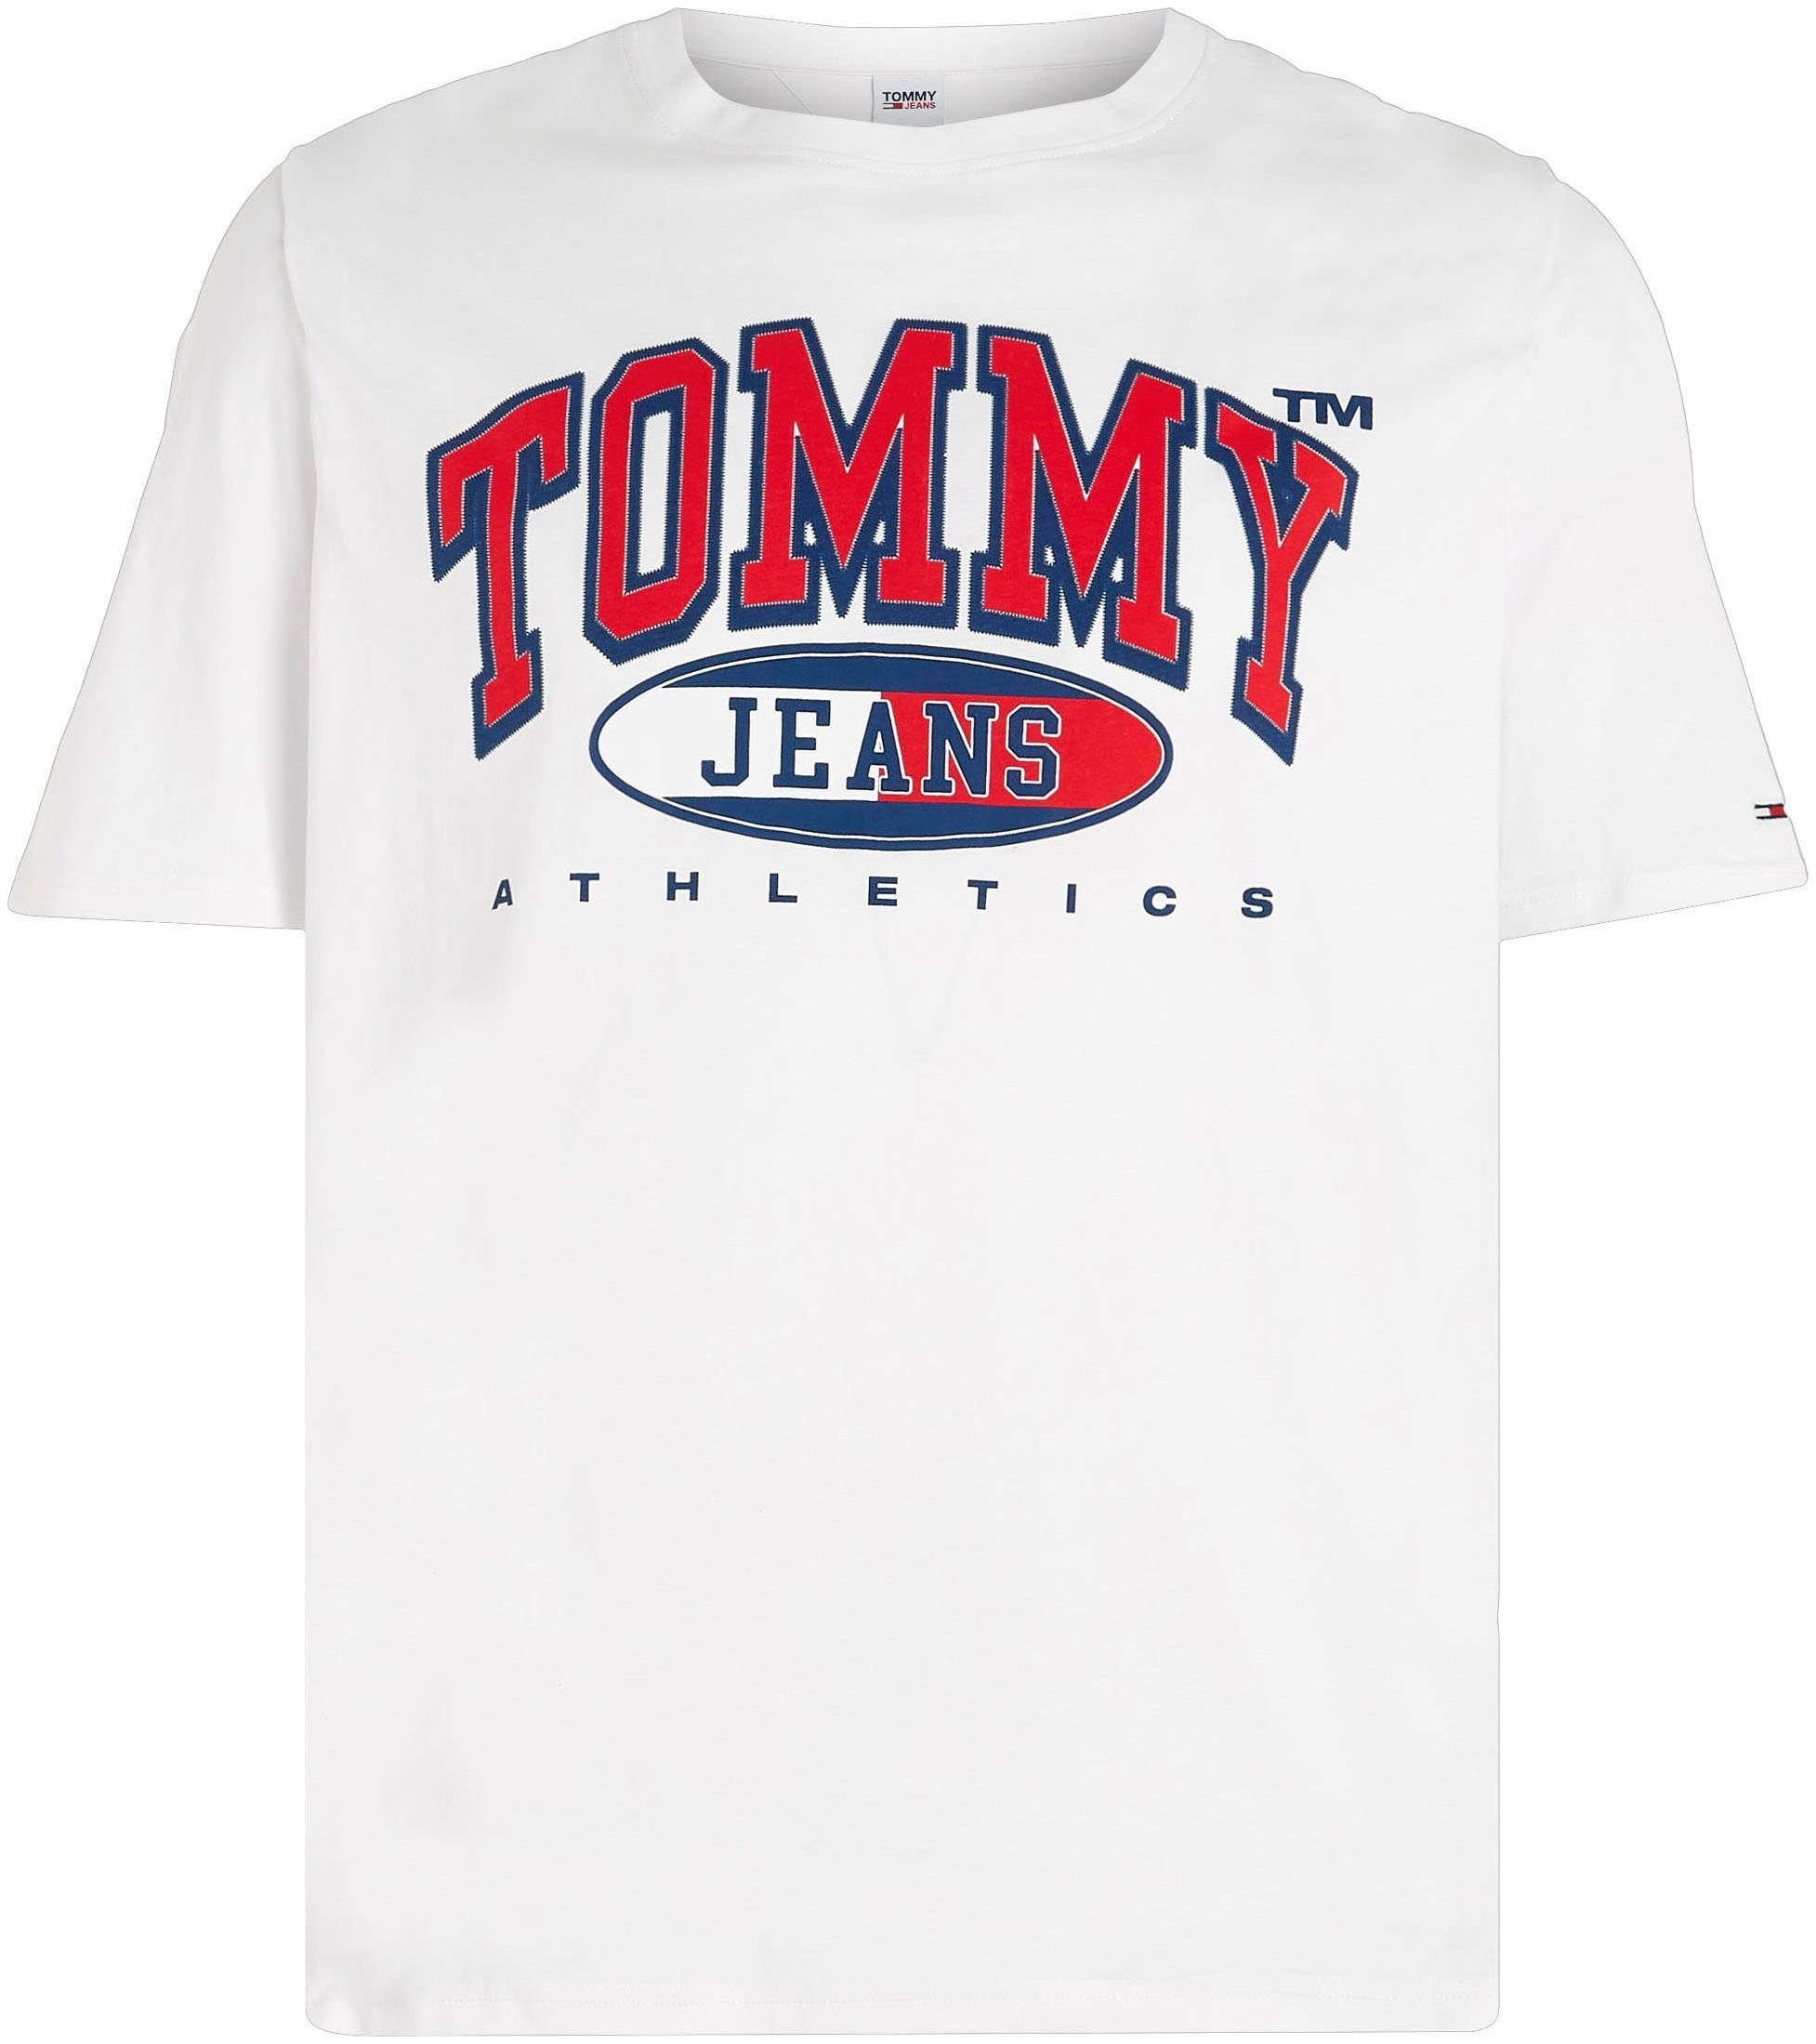 ESSENTIAL GRAPHIC TJM Plus Brust Print Jeans Tommy auf PLUS White mit TEE der T-Shirt